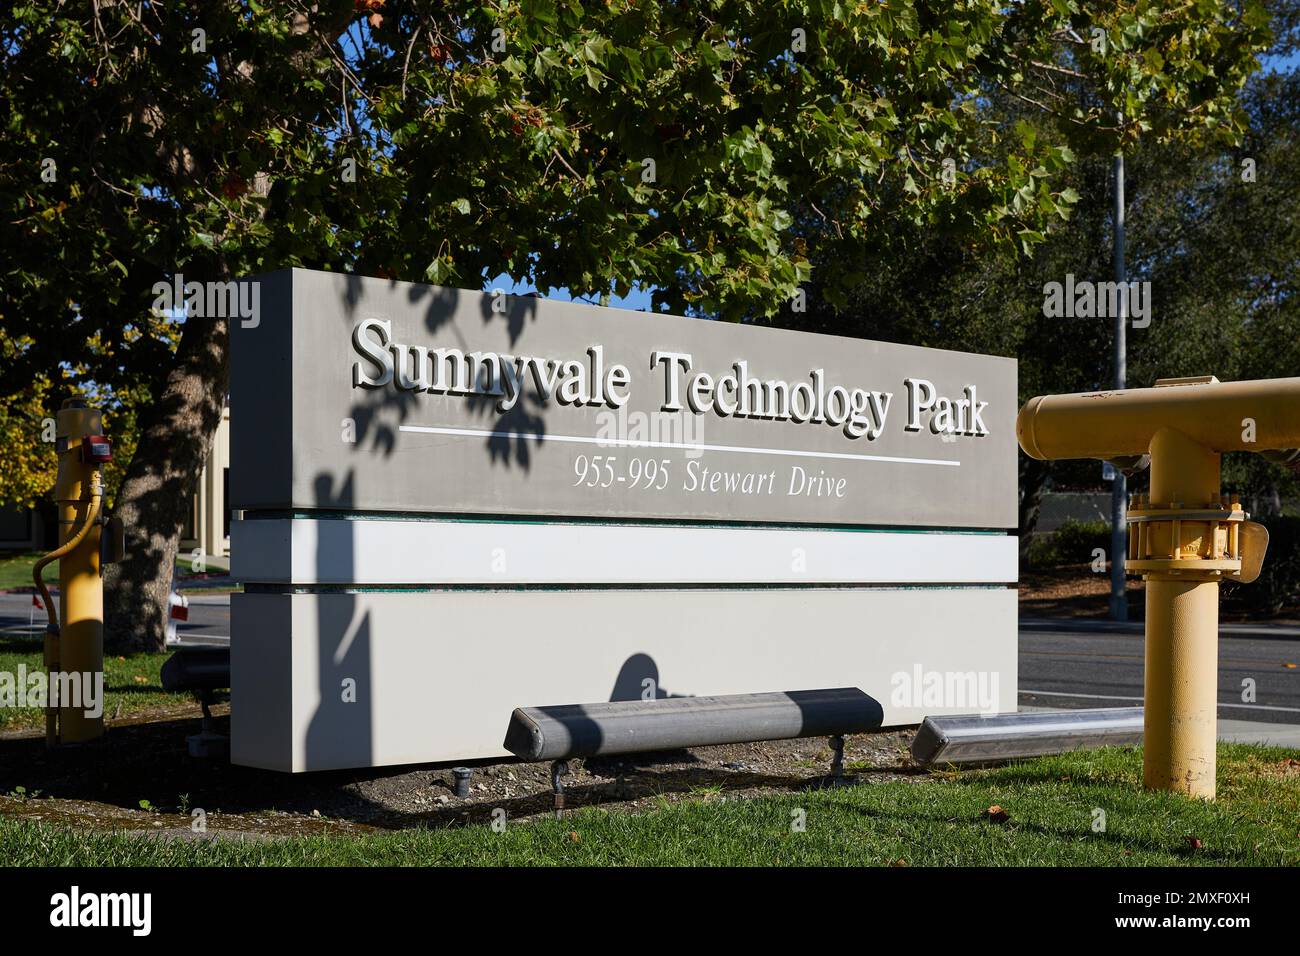 Sunnyvale Tech Park, sign; Stewart Drive, Sunnyvale, California Stock Photo